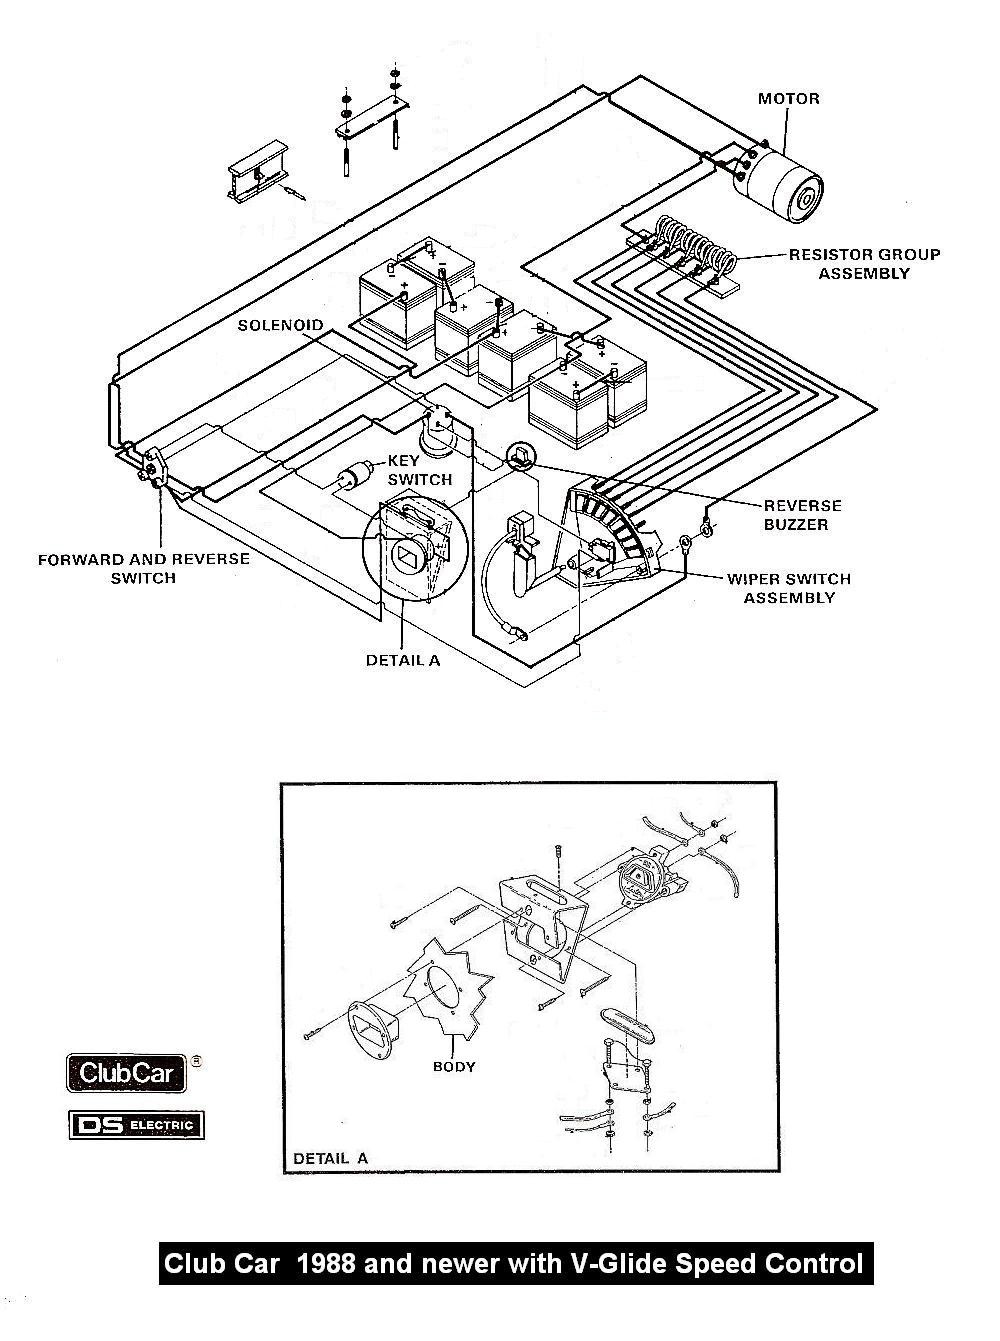 89 club car wiring diagram wiring diagrams 89 club car wiring diagram 89 club car wiring